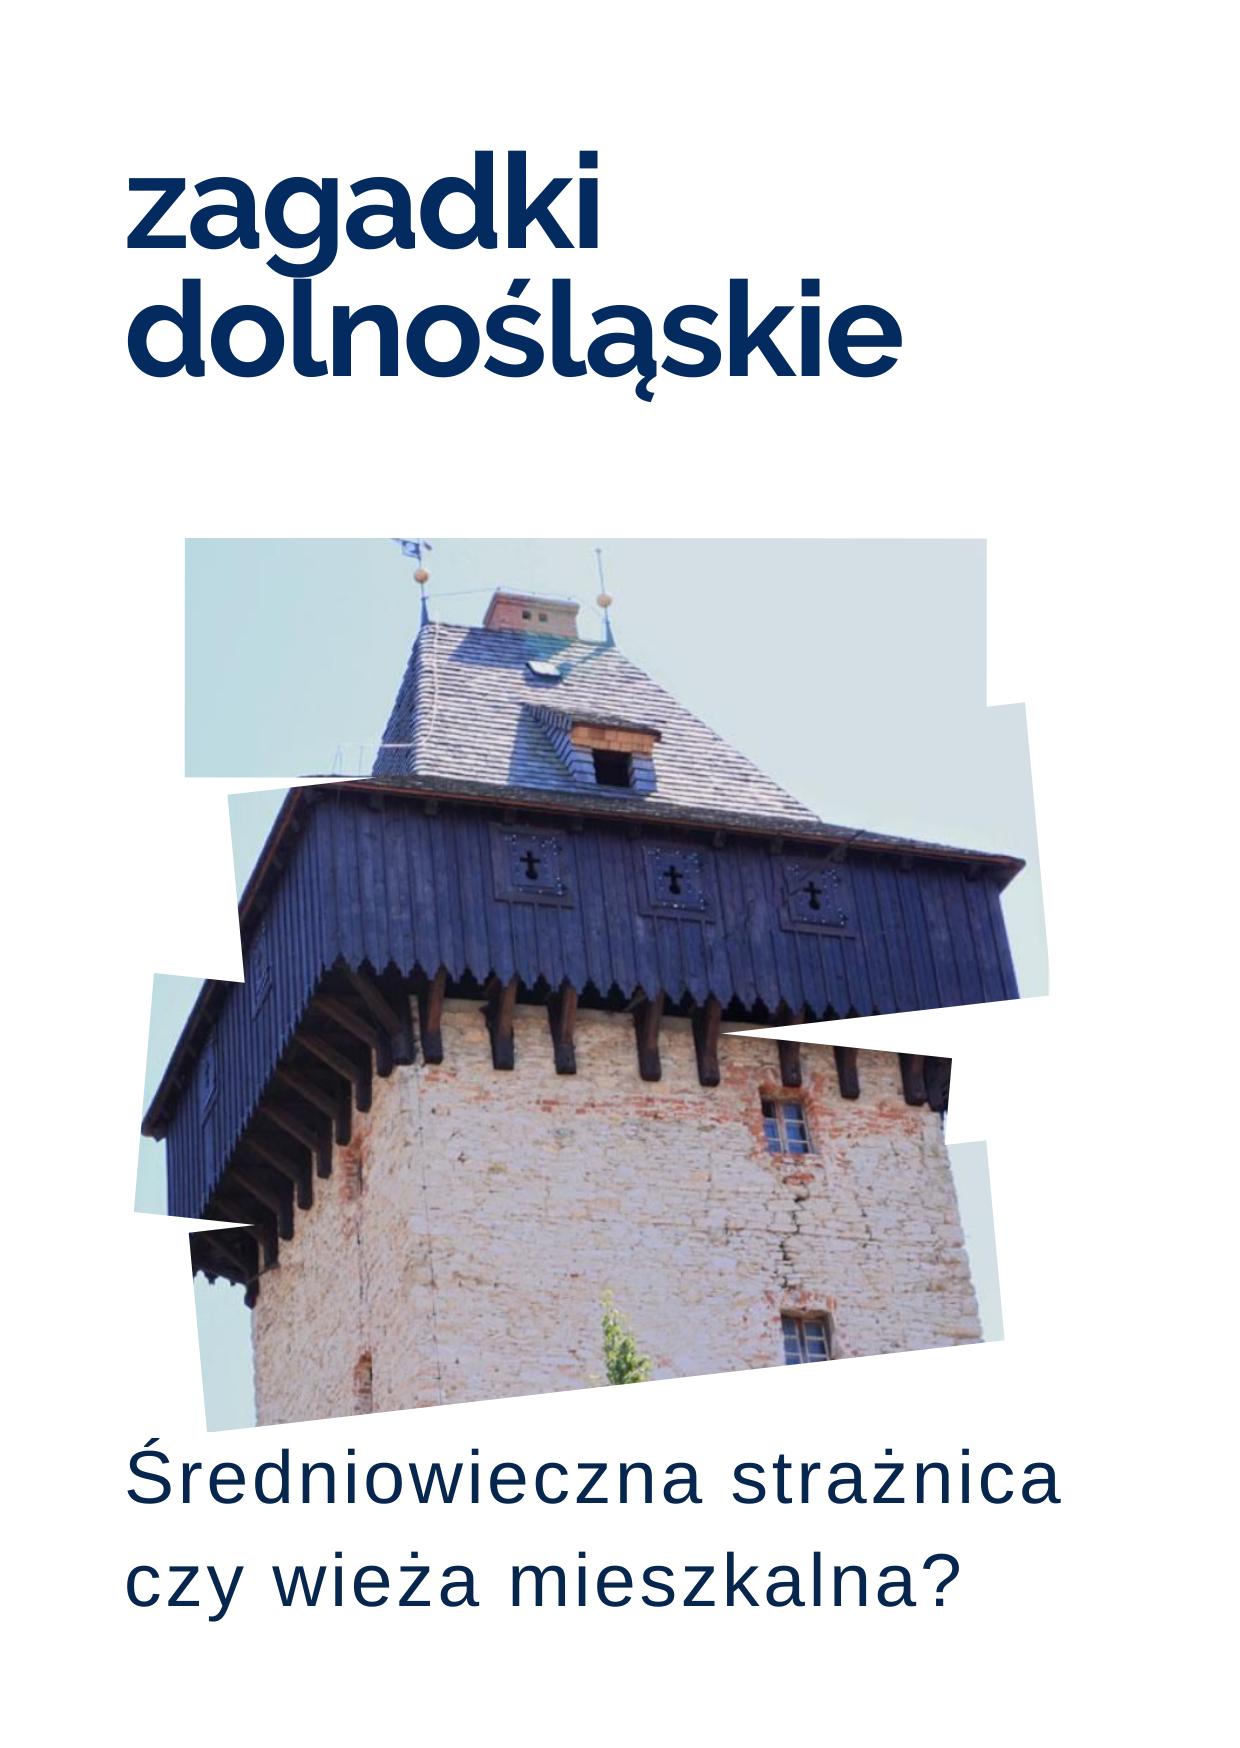 Zagadka tygodnia o Dolnym Śląsku: Średniowieczna strażnica czy wieża mieszkalna?